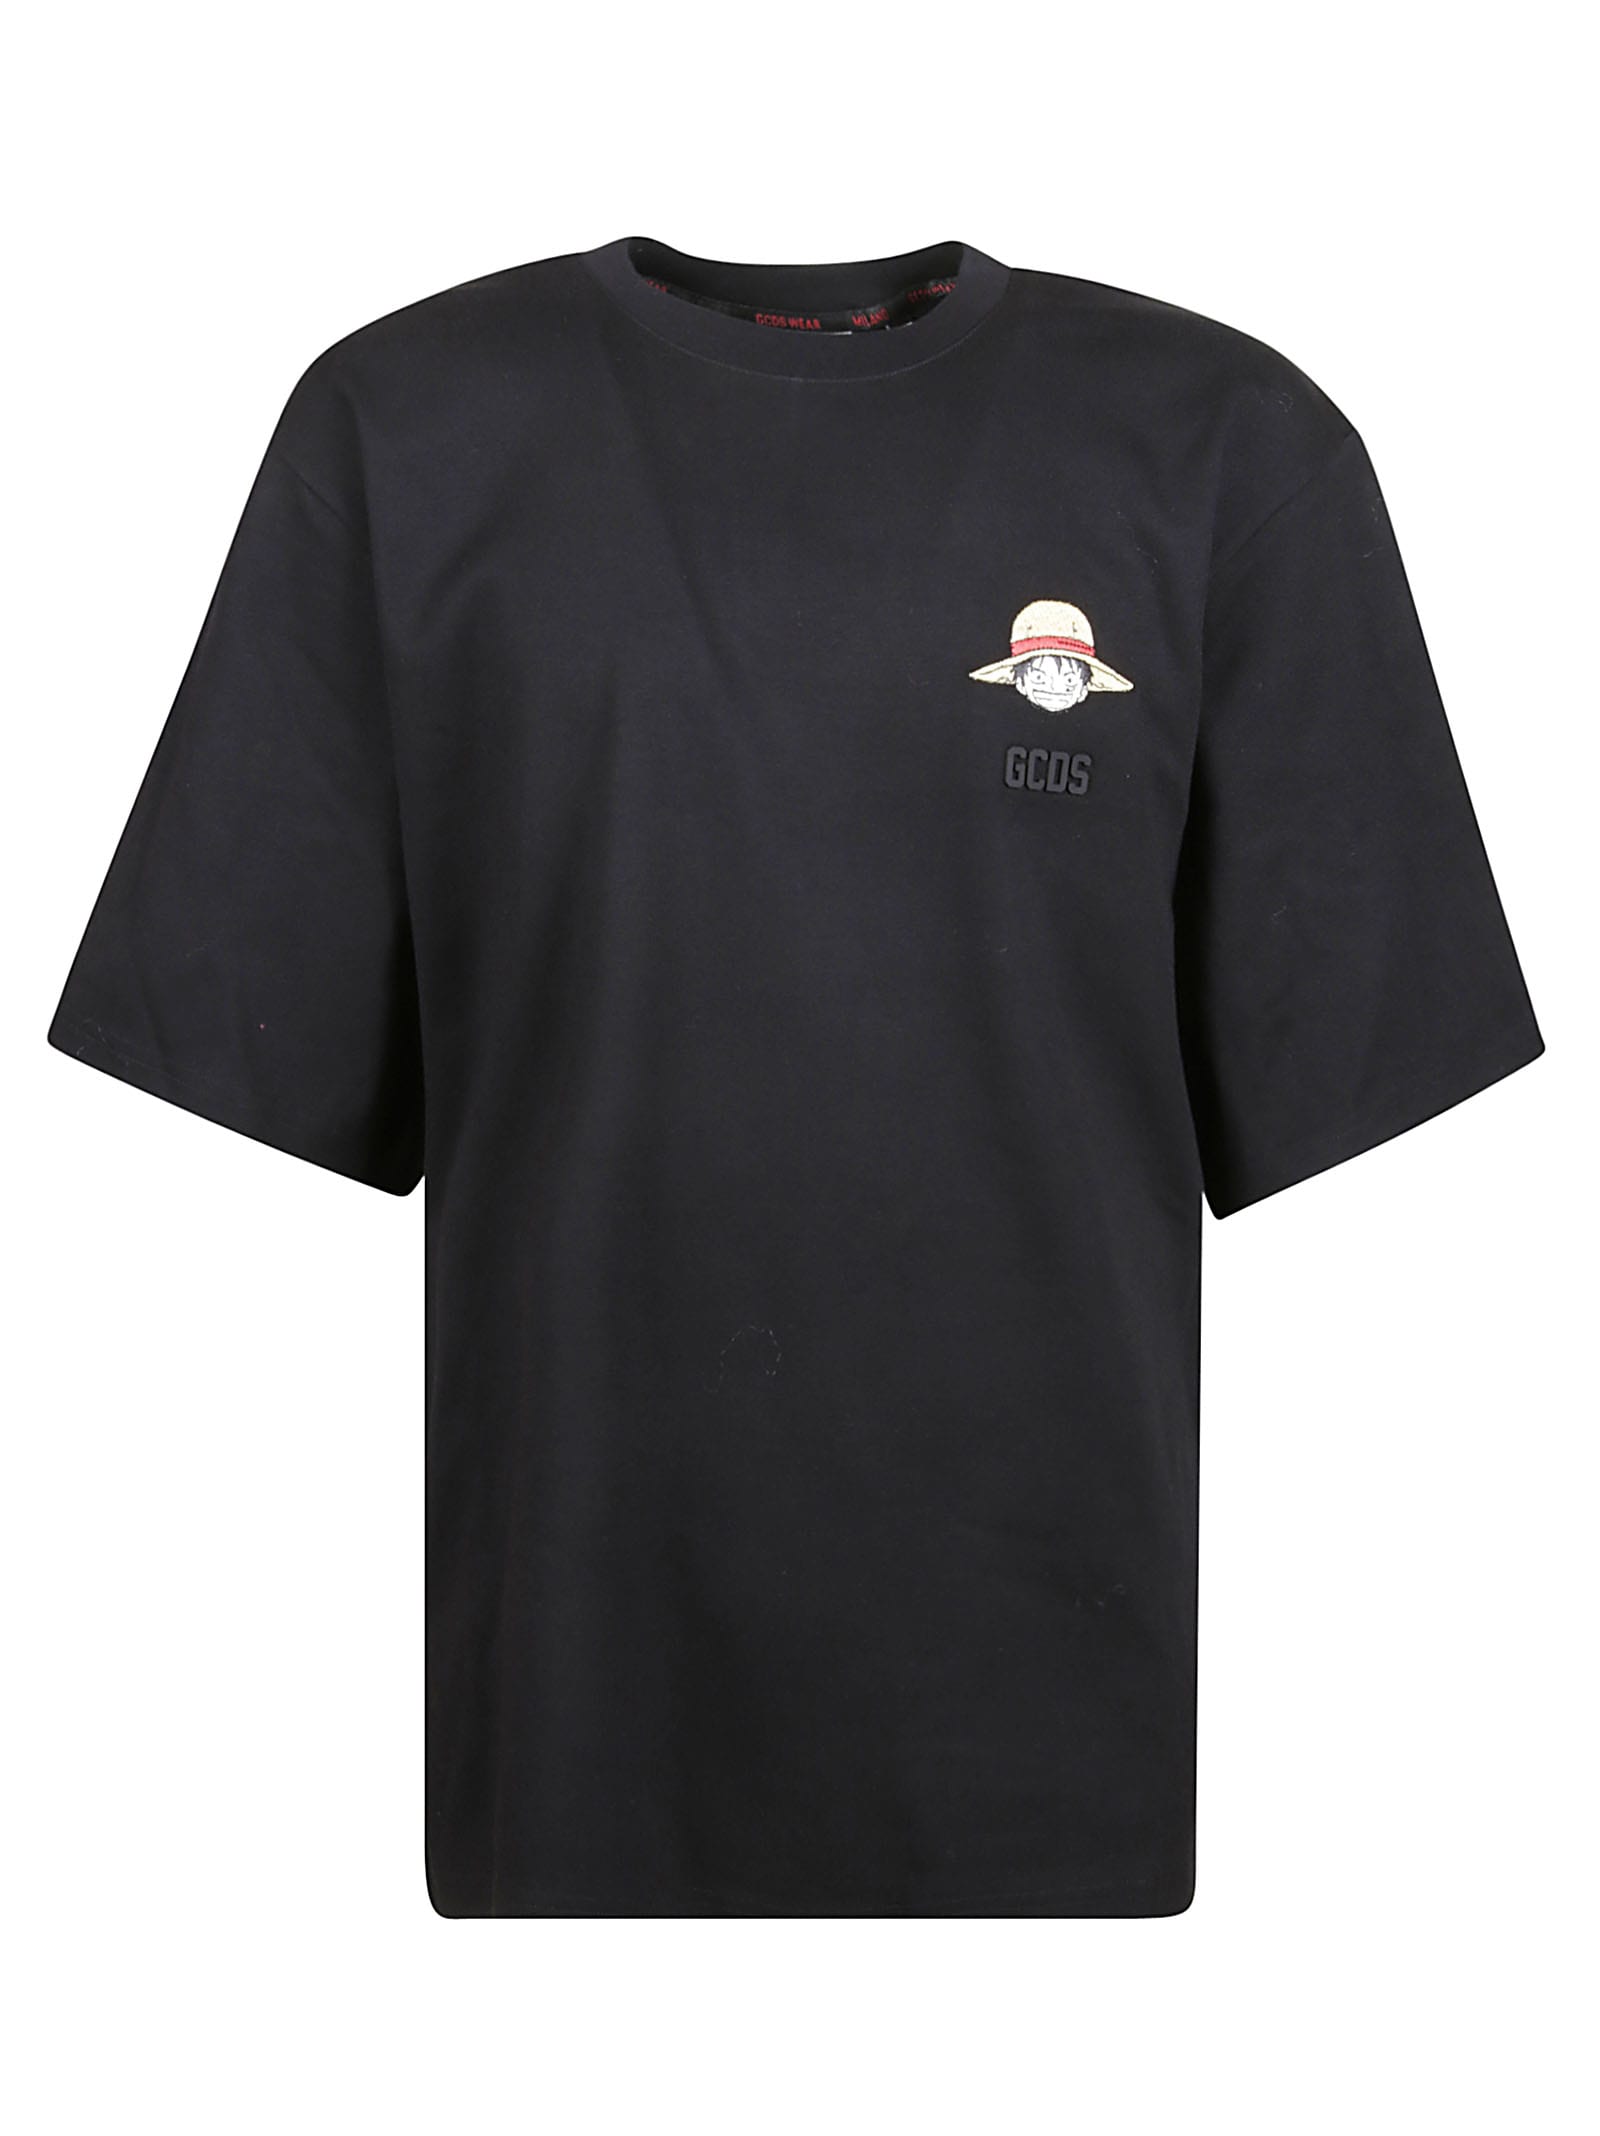 GCDS One Piece T-shirt